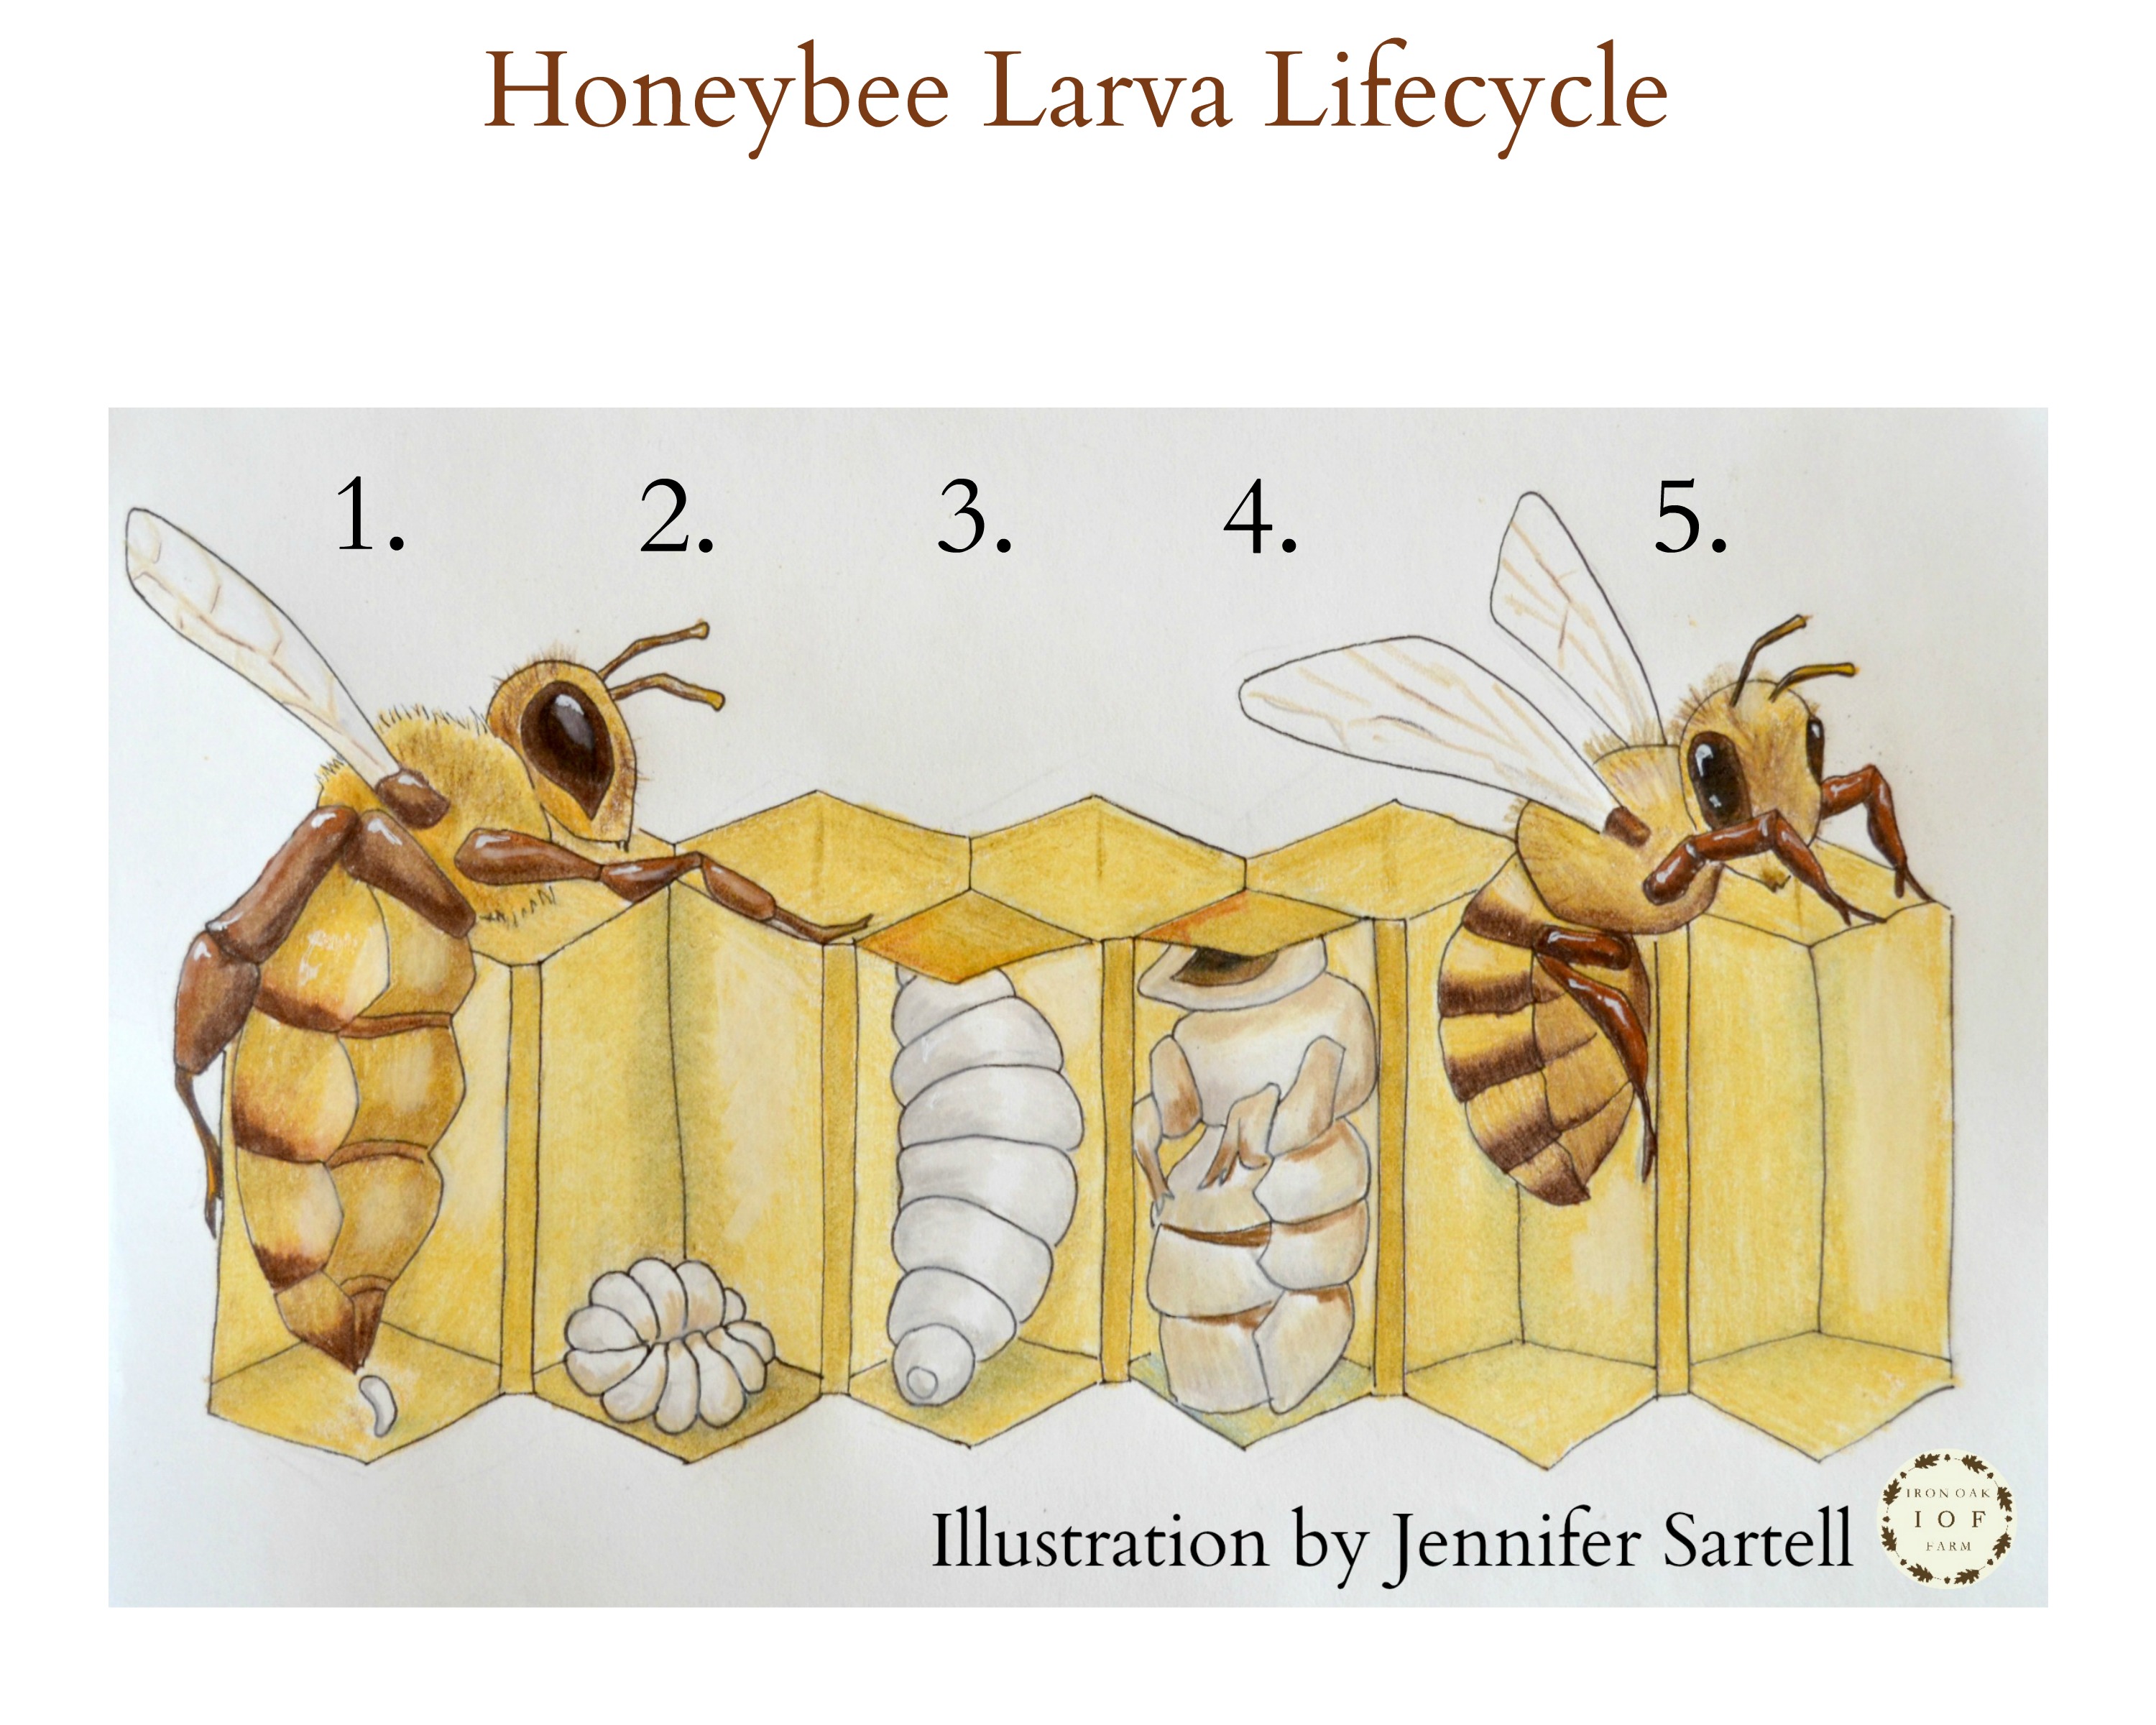 Printable Bee Life Cycle Worksheet